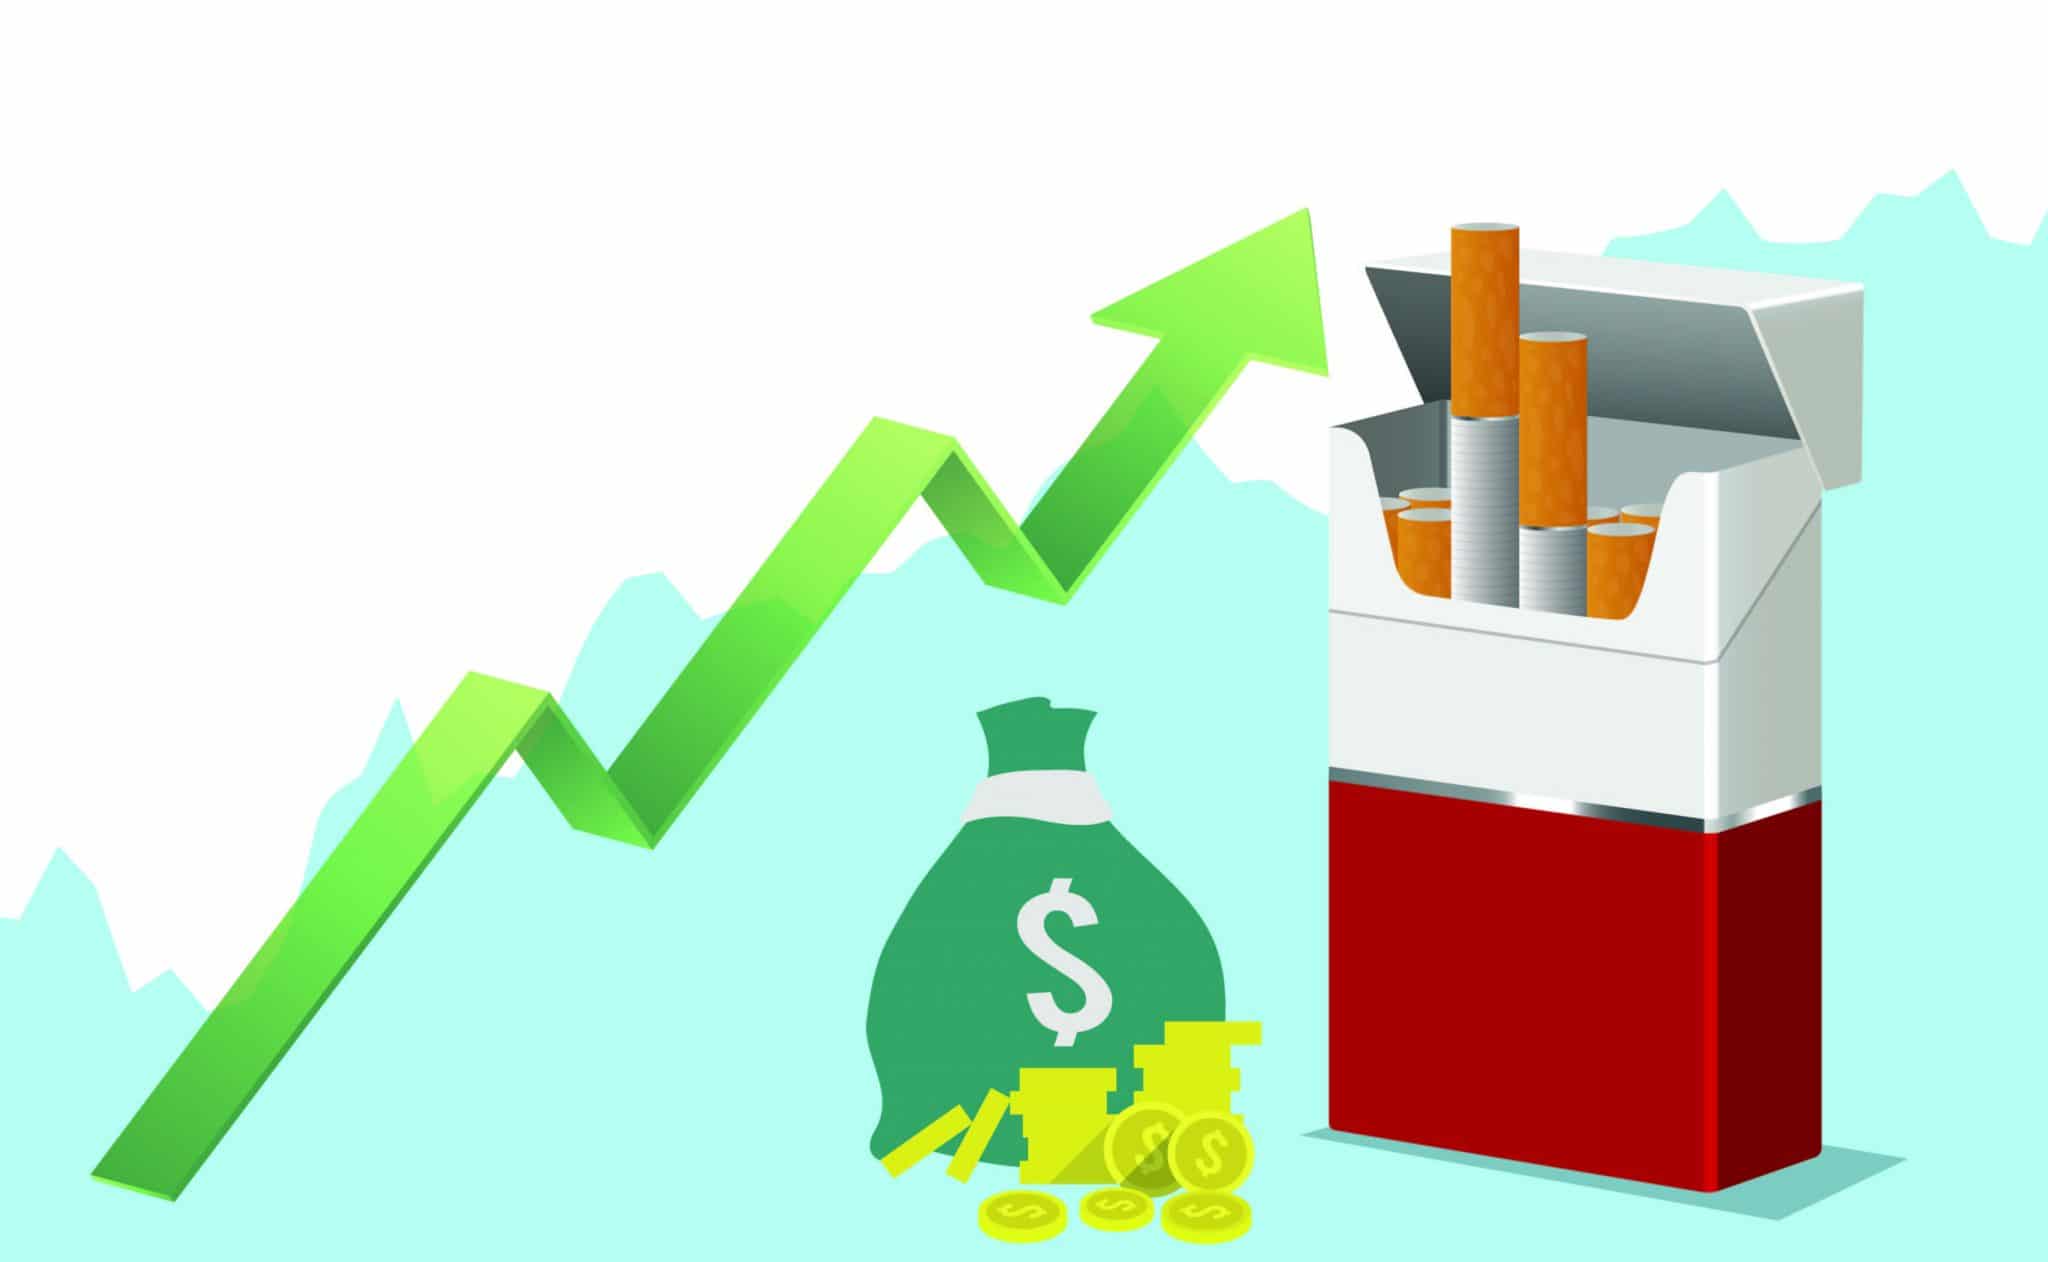 aumentar costo de cajetillas de cigarro a más de 80 pesos